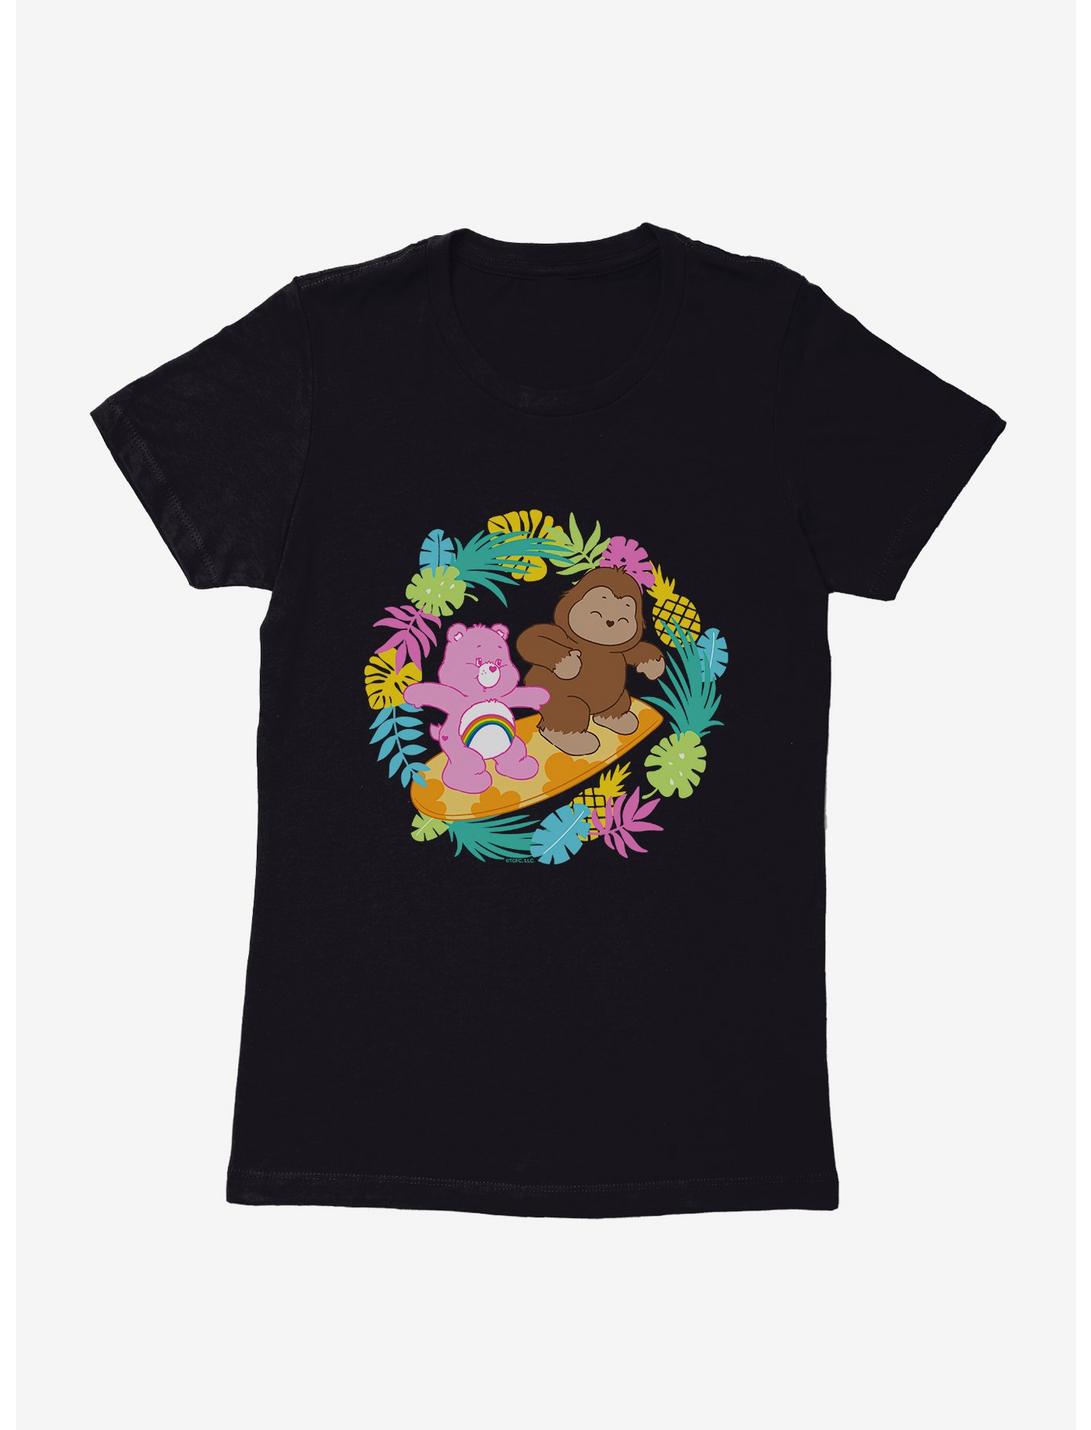 Care Bears Bigfoot Cheer Tropic Womens T-Shirt, BLACK, hi-res